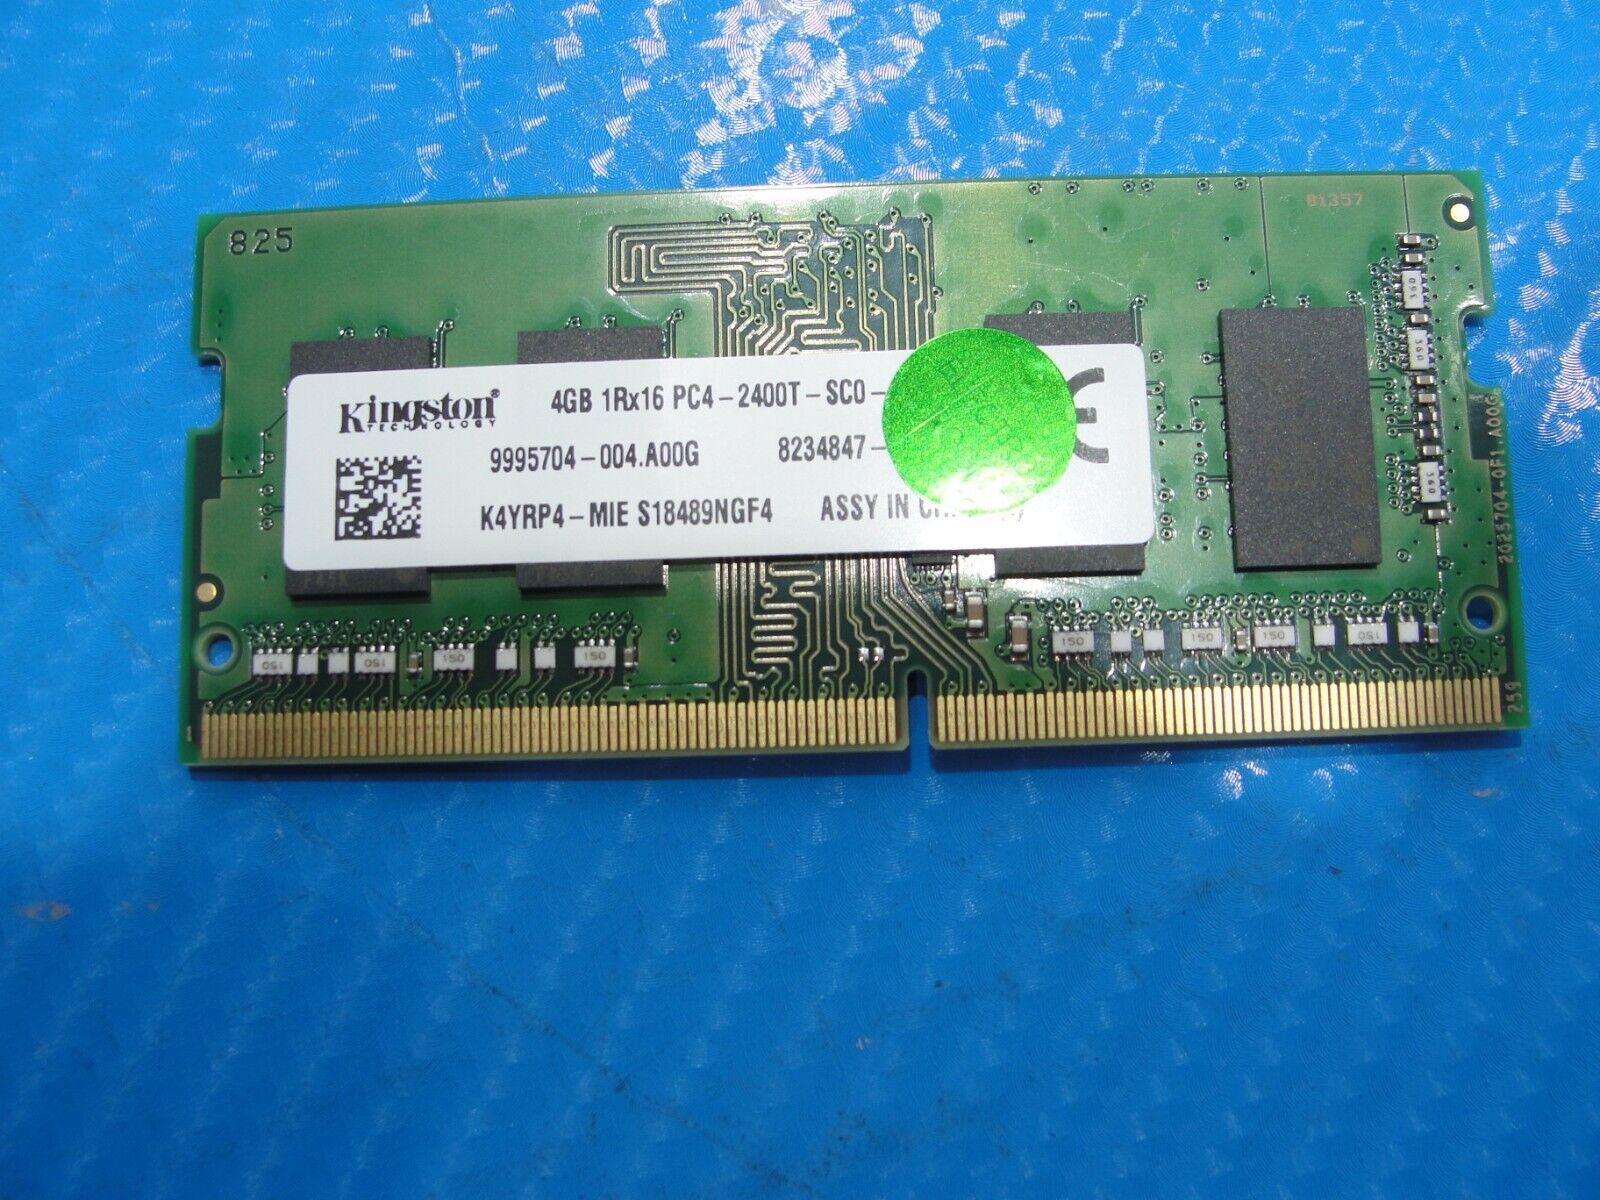 Dell 3390 Kingston 4GB 1Rx16 PC4-2400T Memory Ram SO-DIMM K4YRP4-MIE